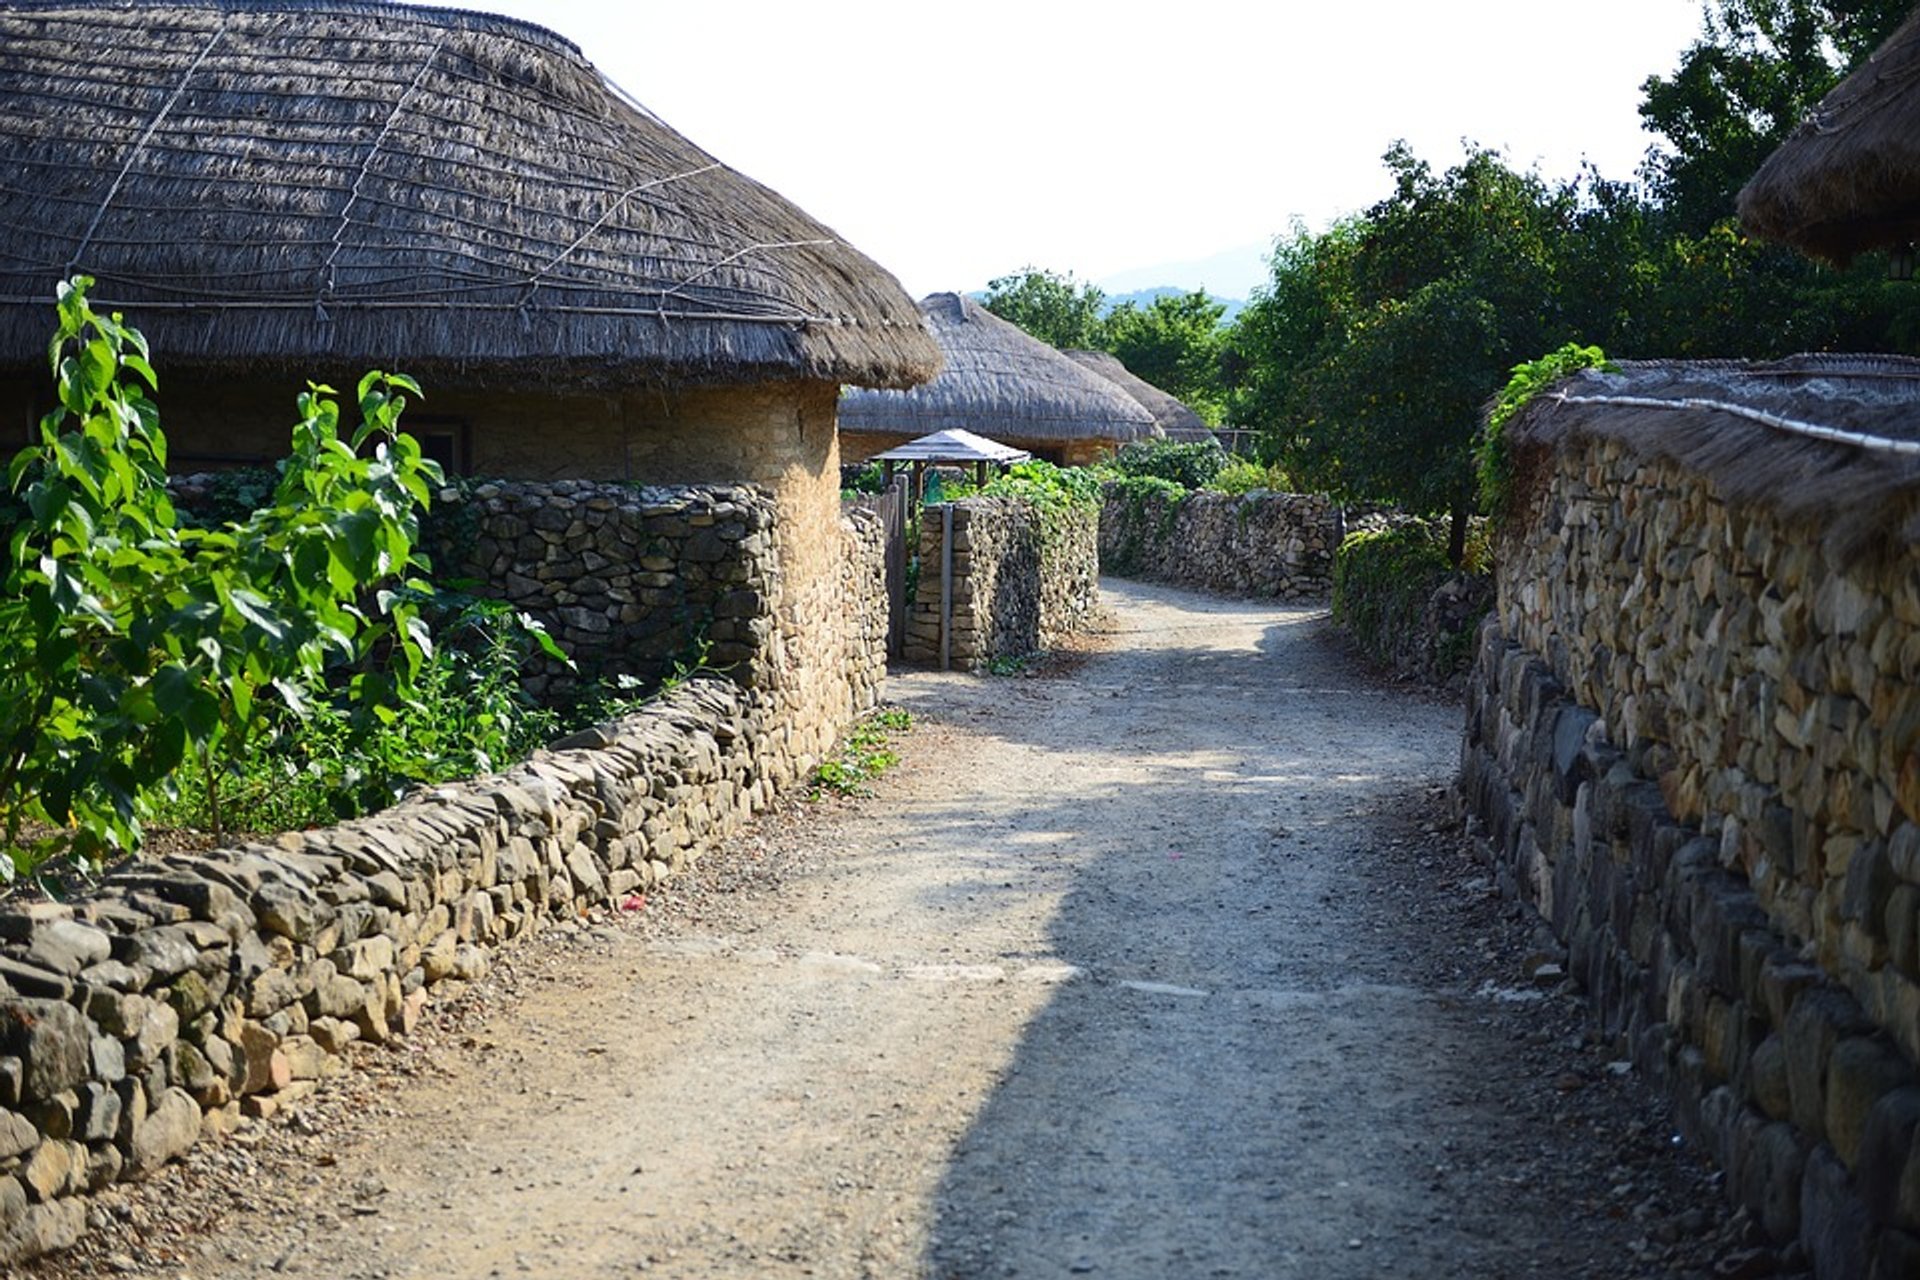 Traditionelle Dörfer (Agrarsaison)